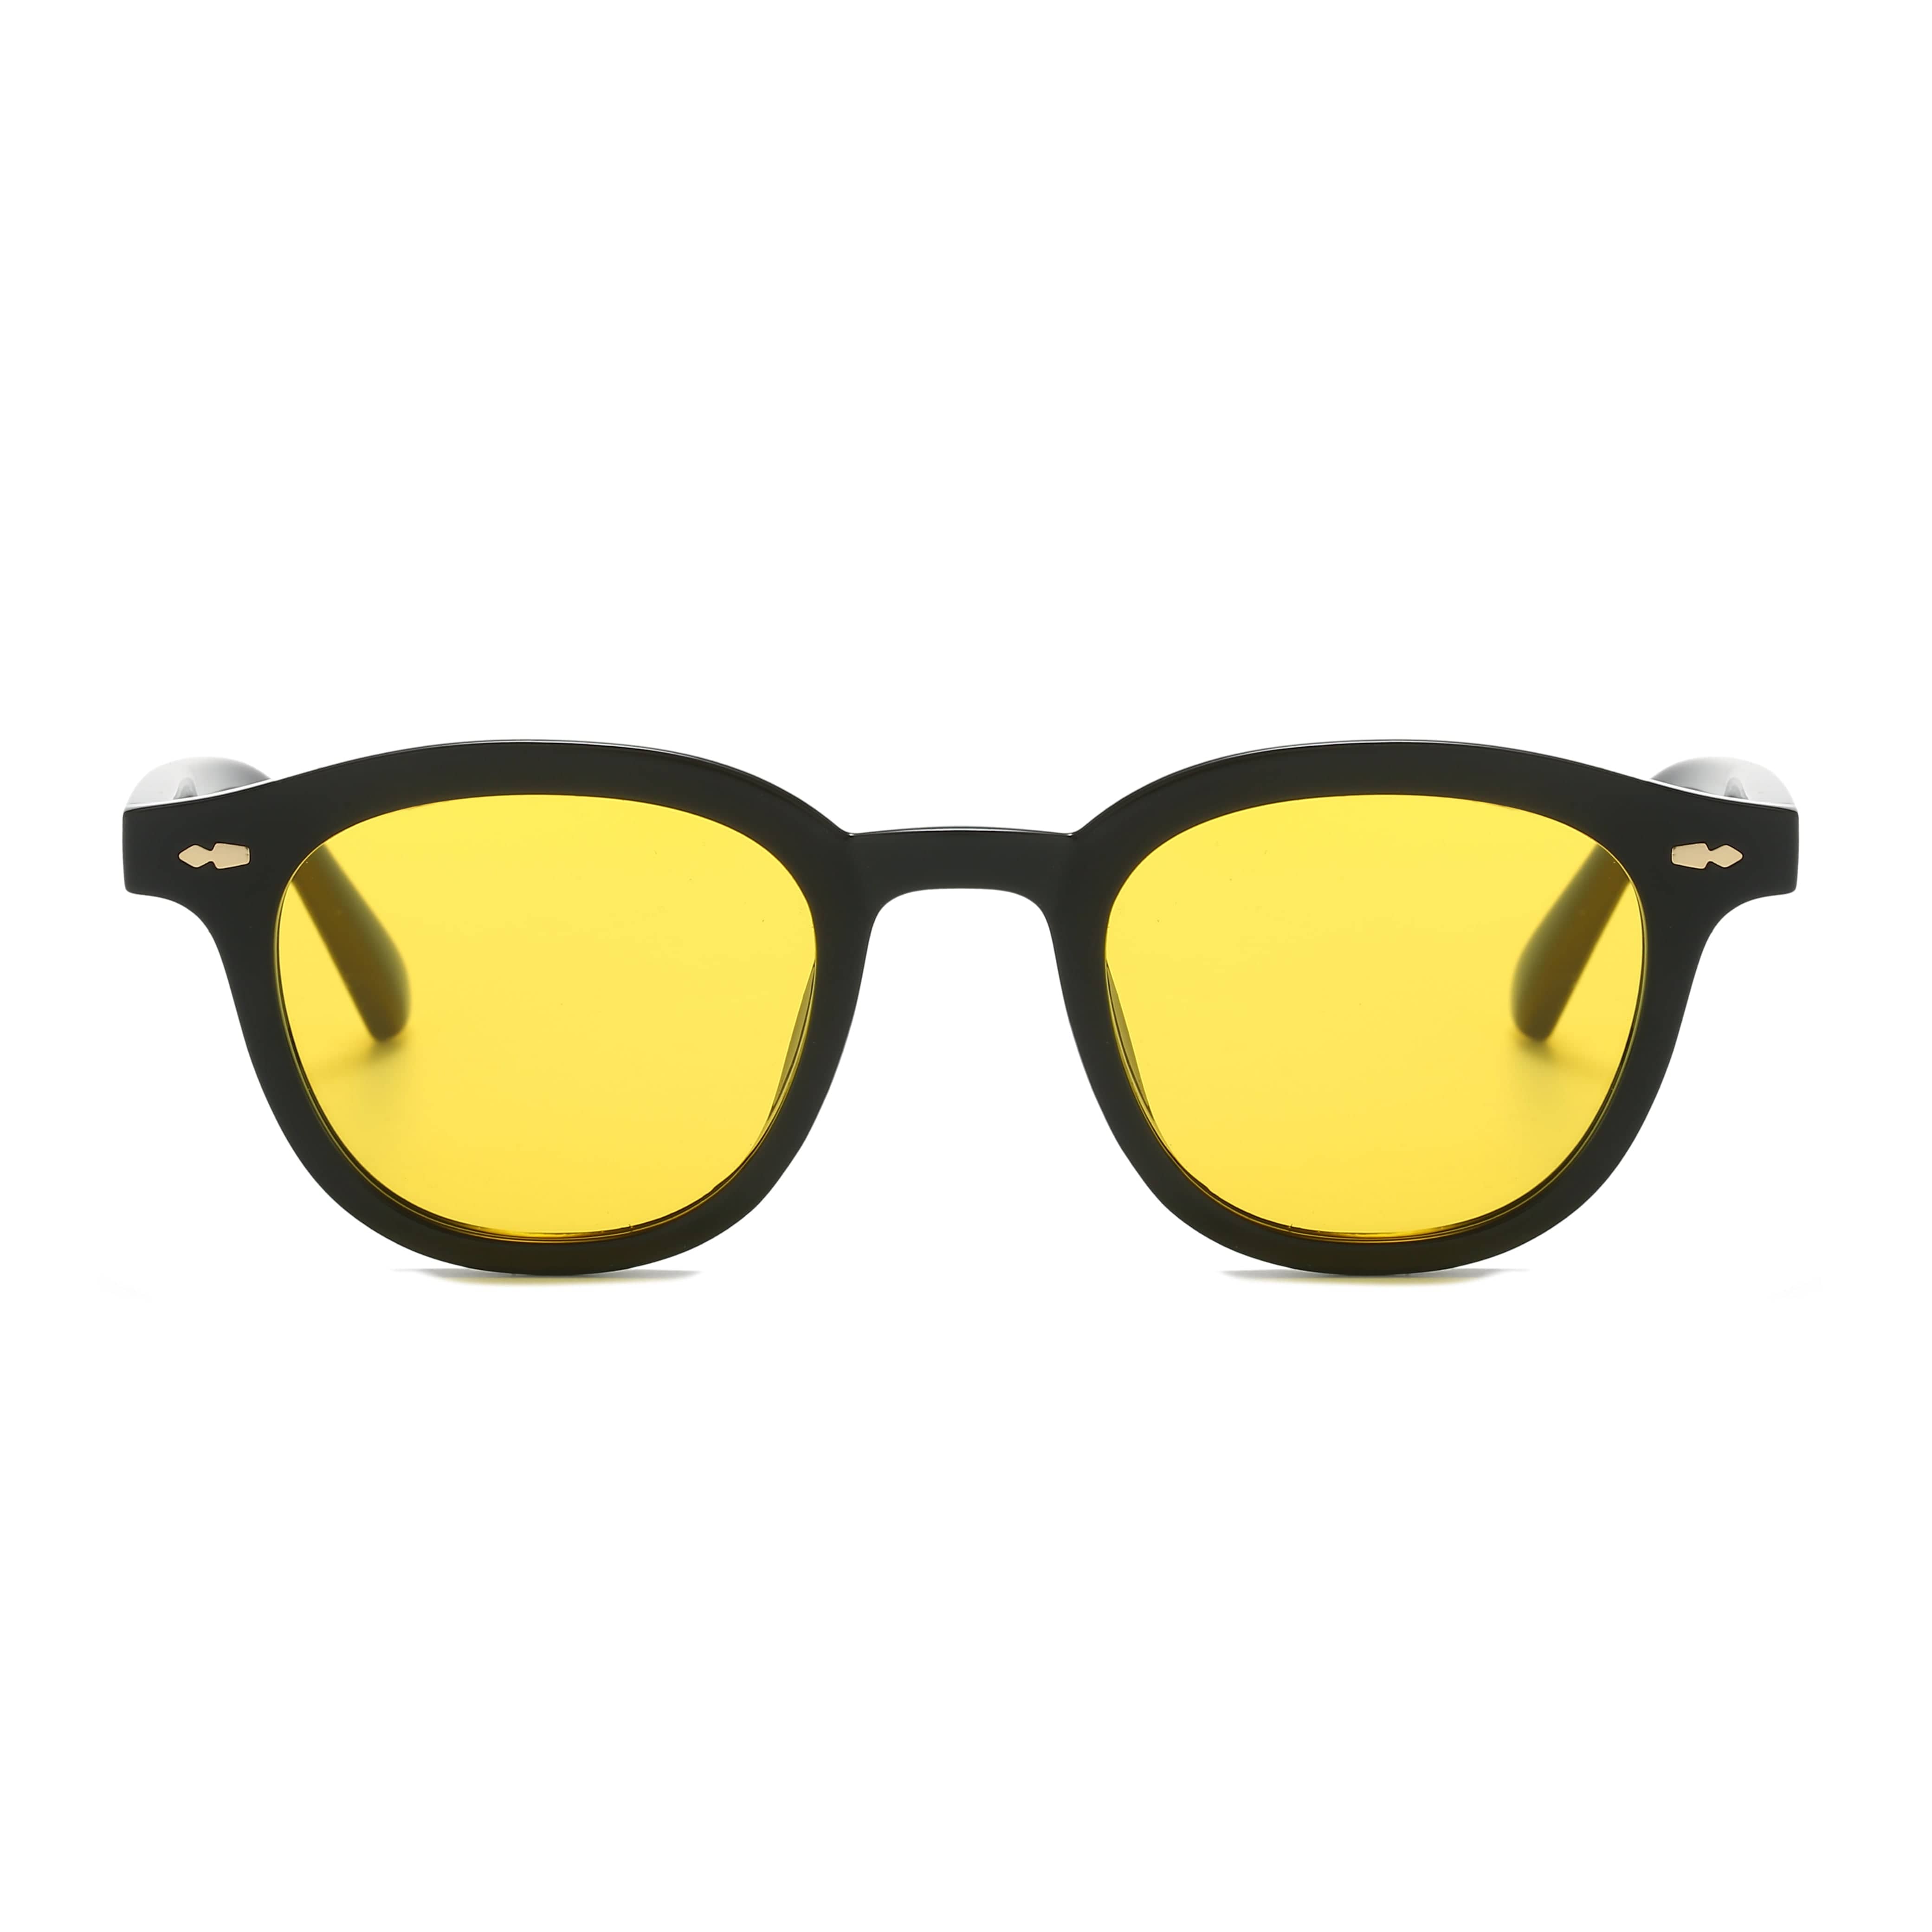 GIUSTIZIERI VECCHI Sunglasses Small / Marigold Yellow ChicCharmante Duo